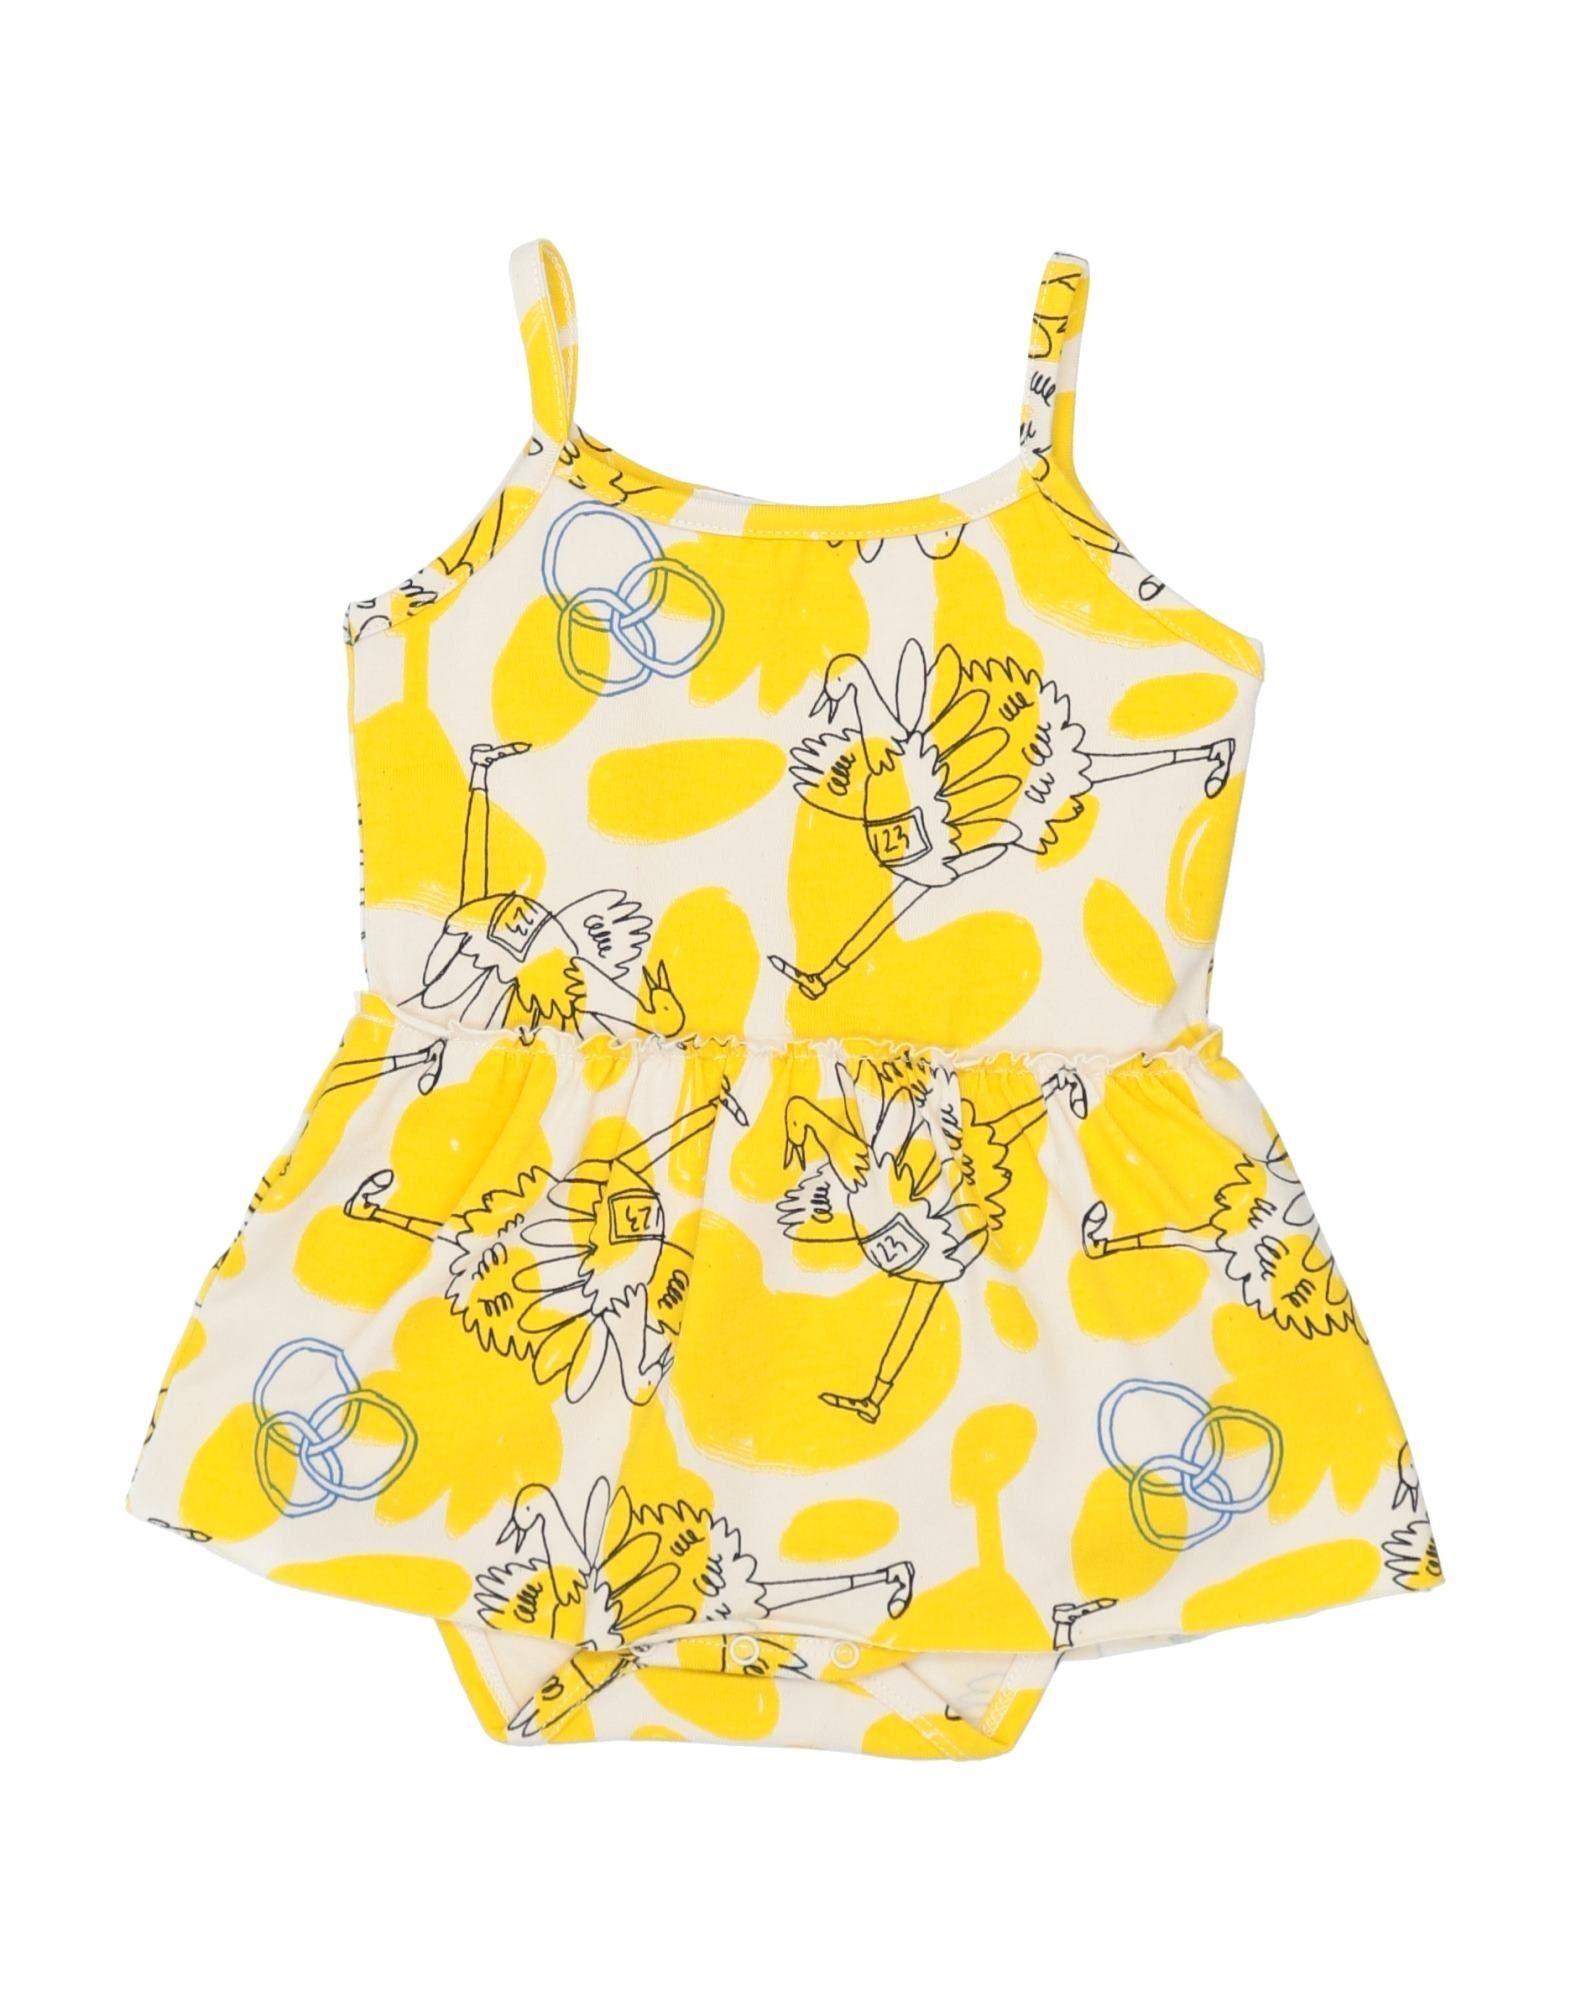 Noe & Zoe Berlin Babies' Bodysuits In Yellow